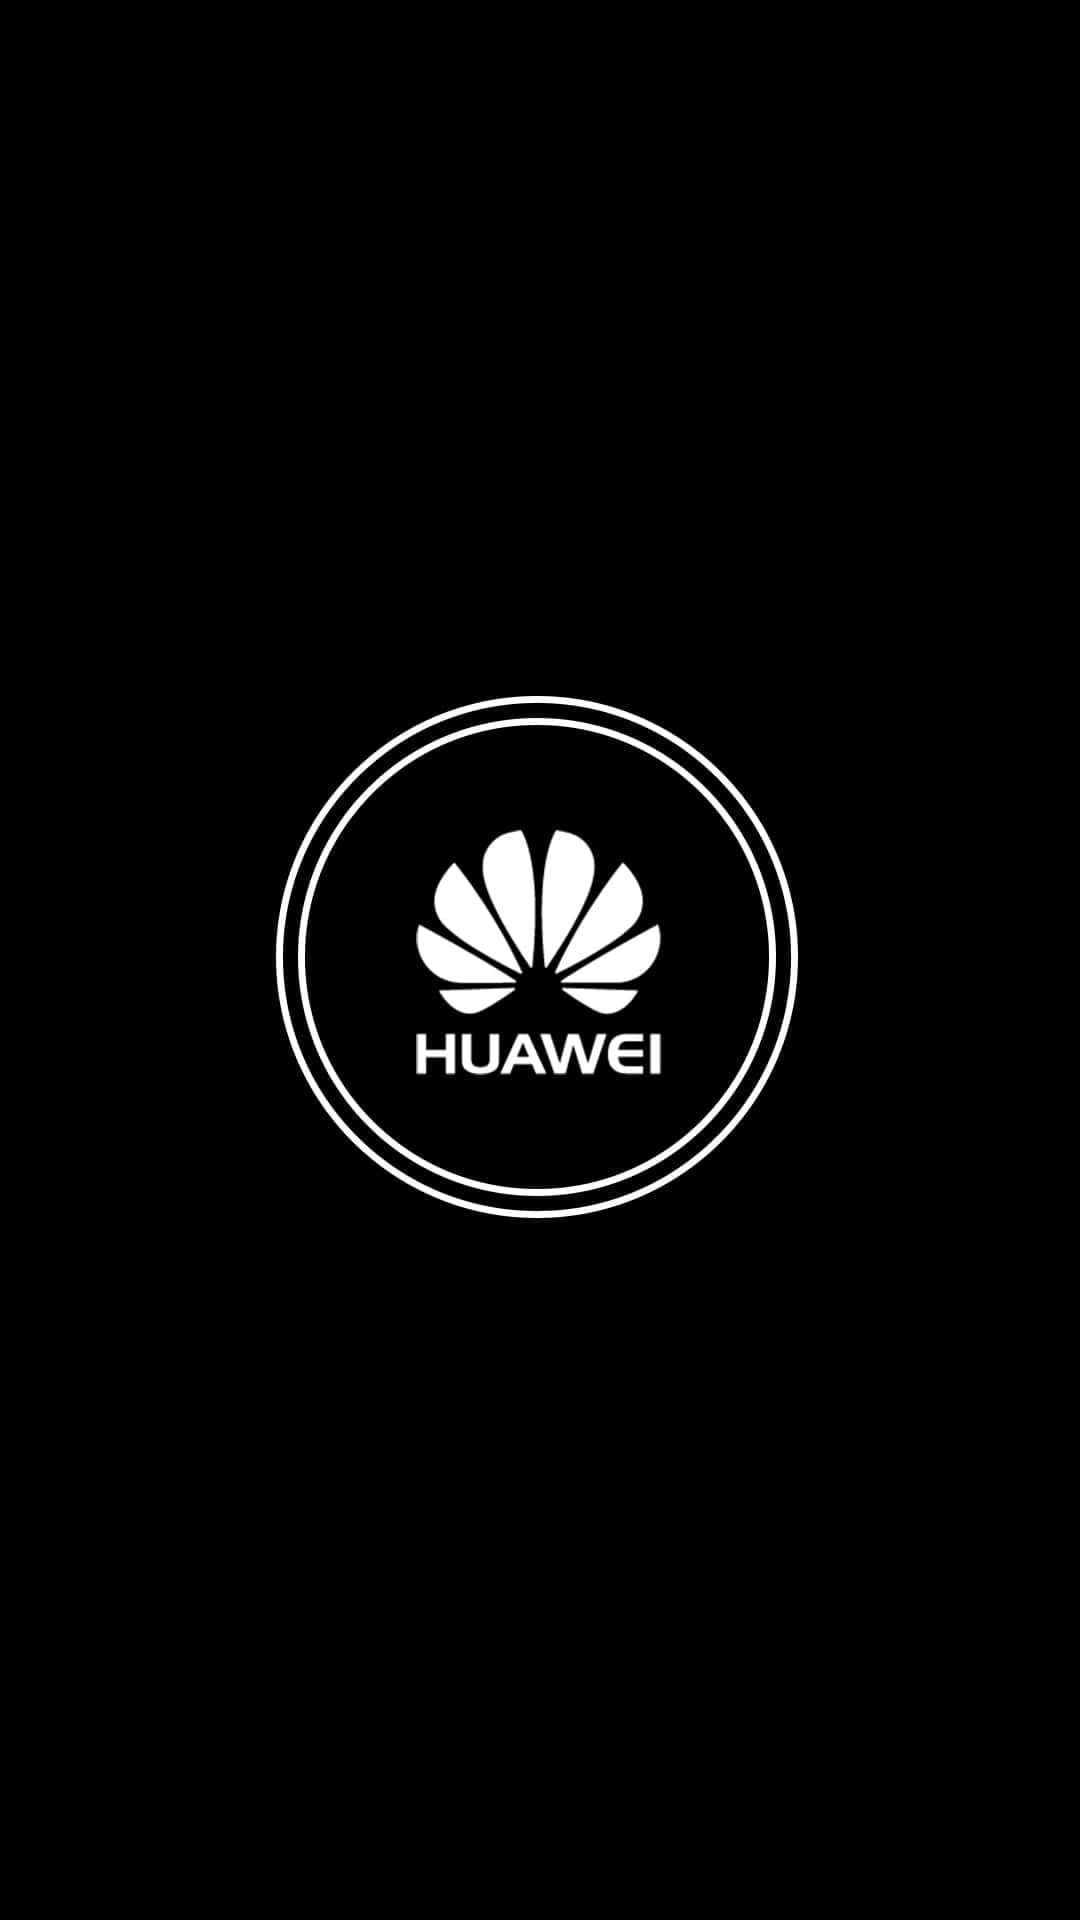 Undispositivo Huawei A Scacchi, Con Un Sottile Sfondo Blu Integrato.